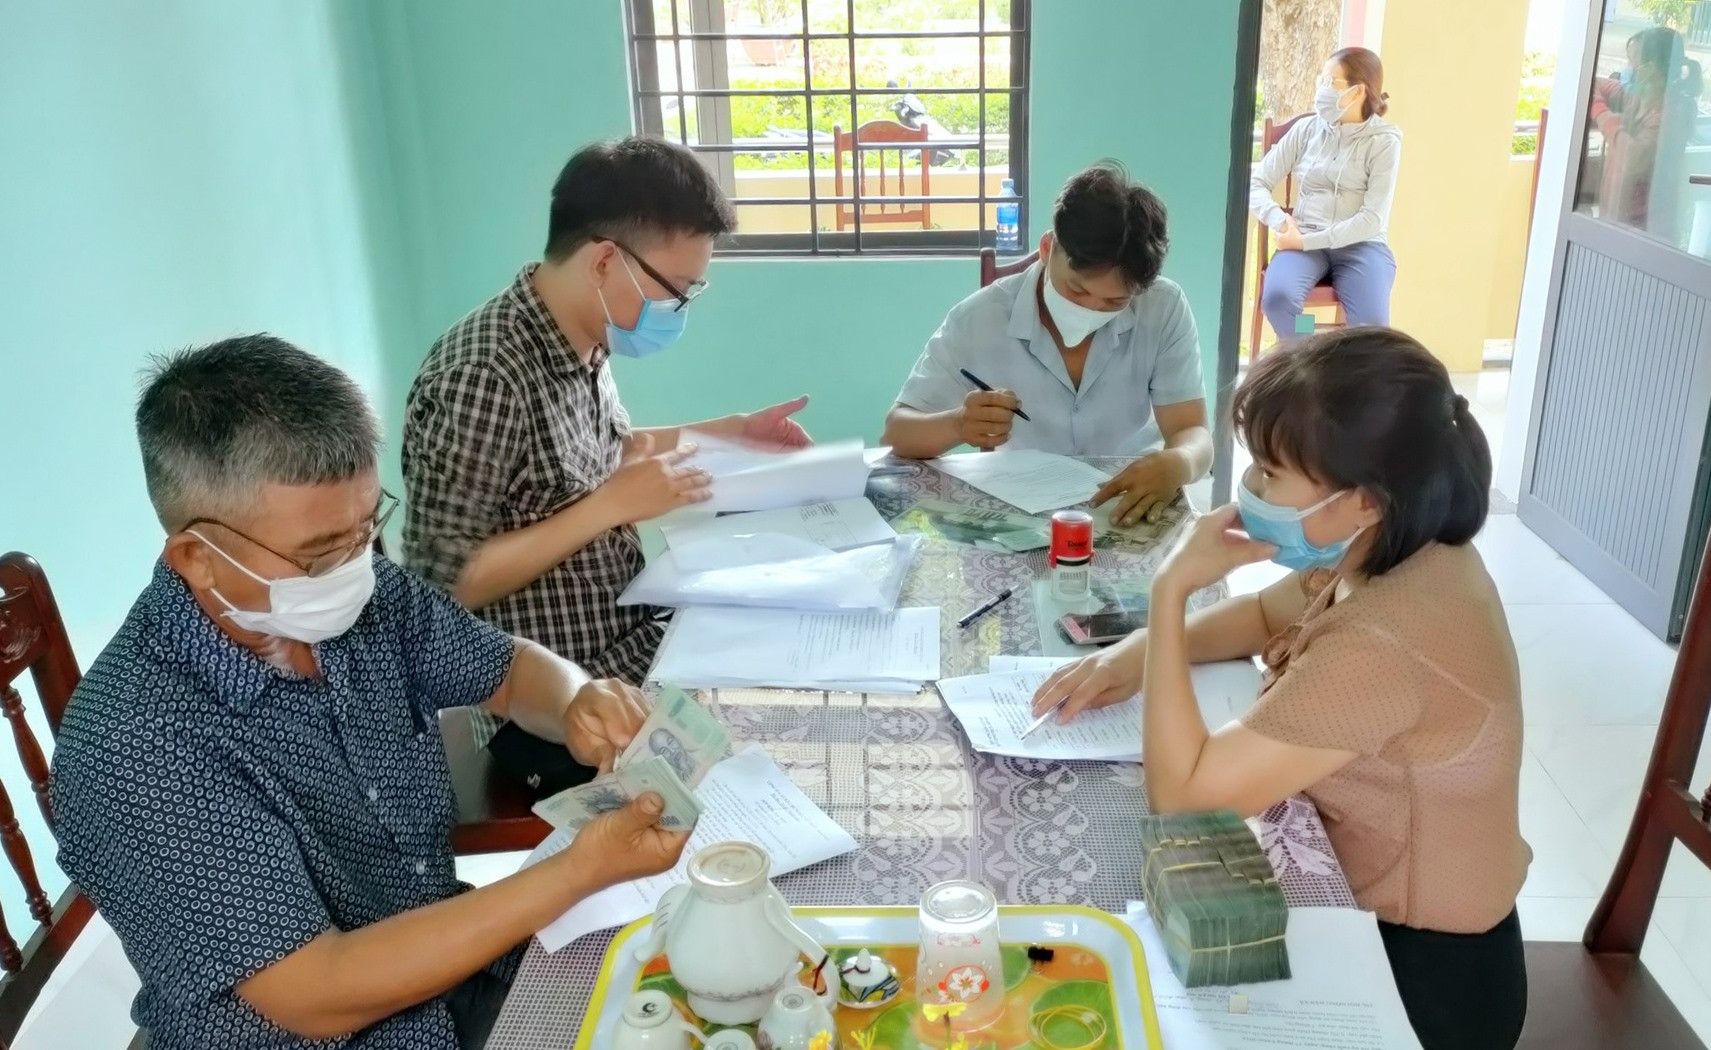 Giải ngân quỹ Hỗ trợ nông dân tỉnh cho 20 hộ vay tại 2 xã Điện Quang và Điện Trung nhằm chăn nuôi giống bò 3B. Ảnh: N.Trang